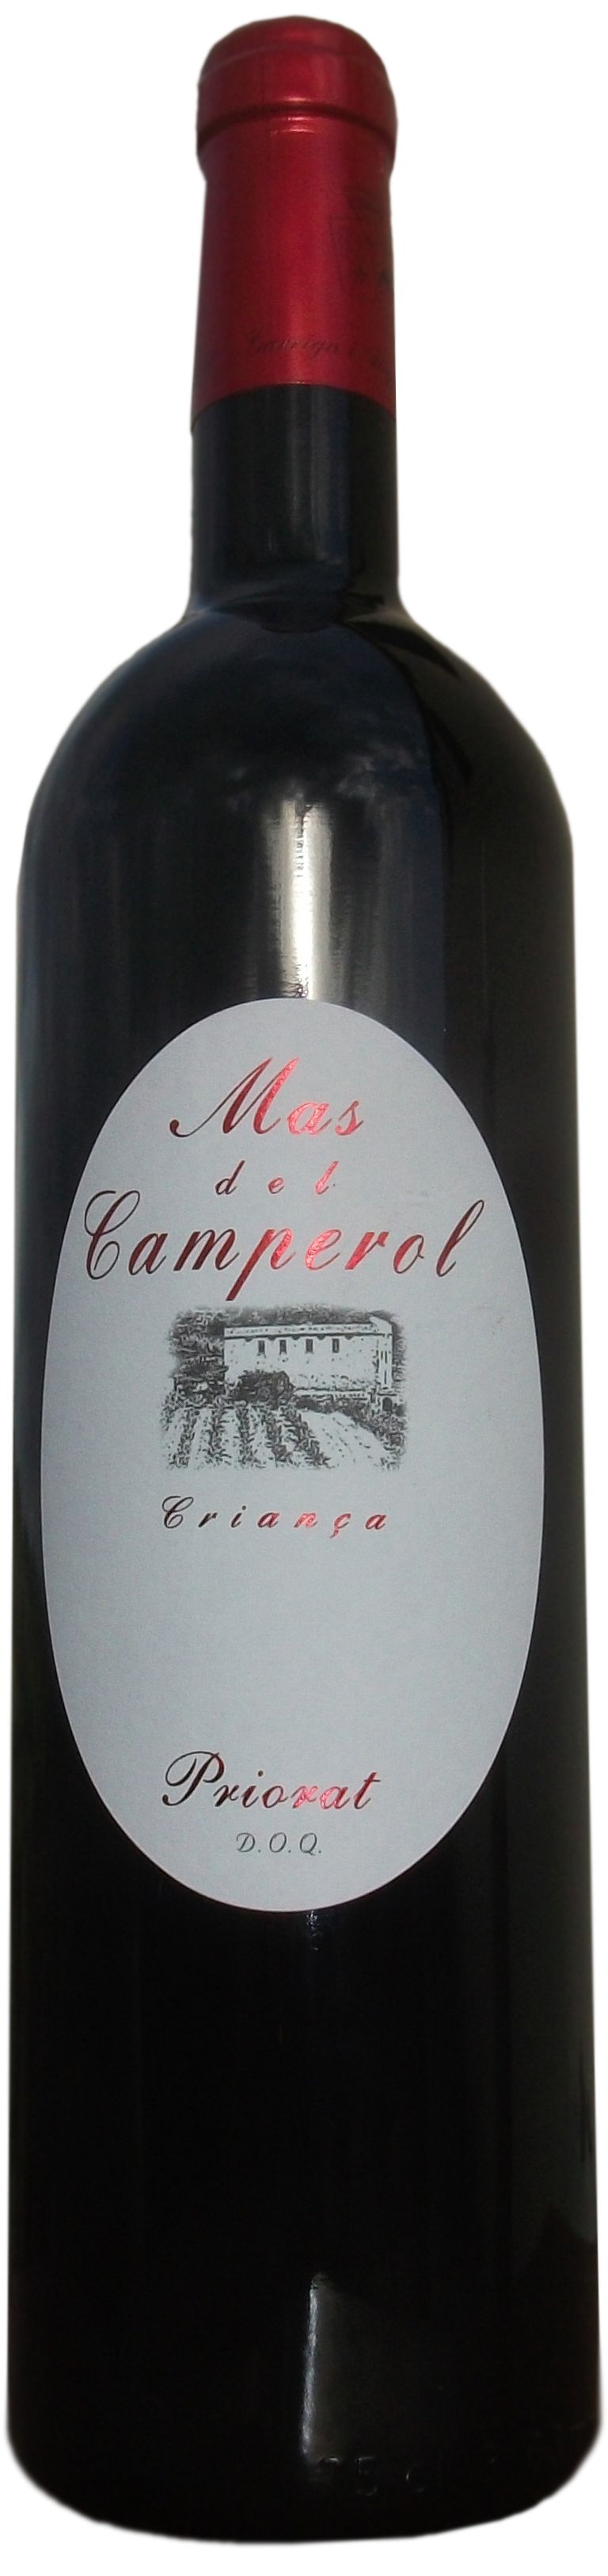 Mas Garrian, Mas Del Camperol, 2002